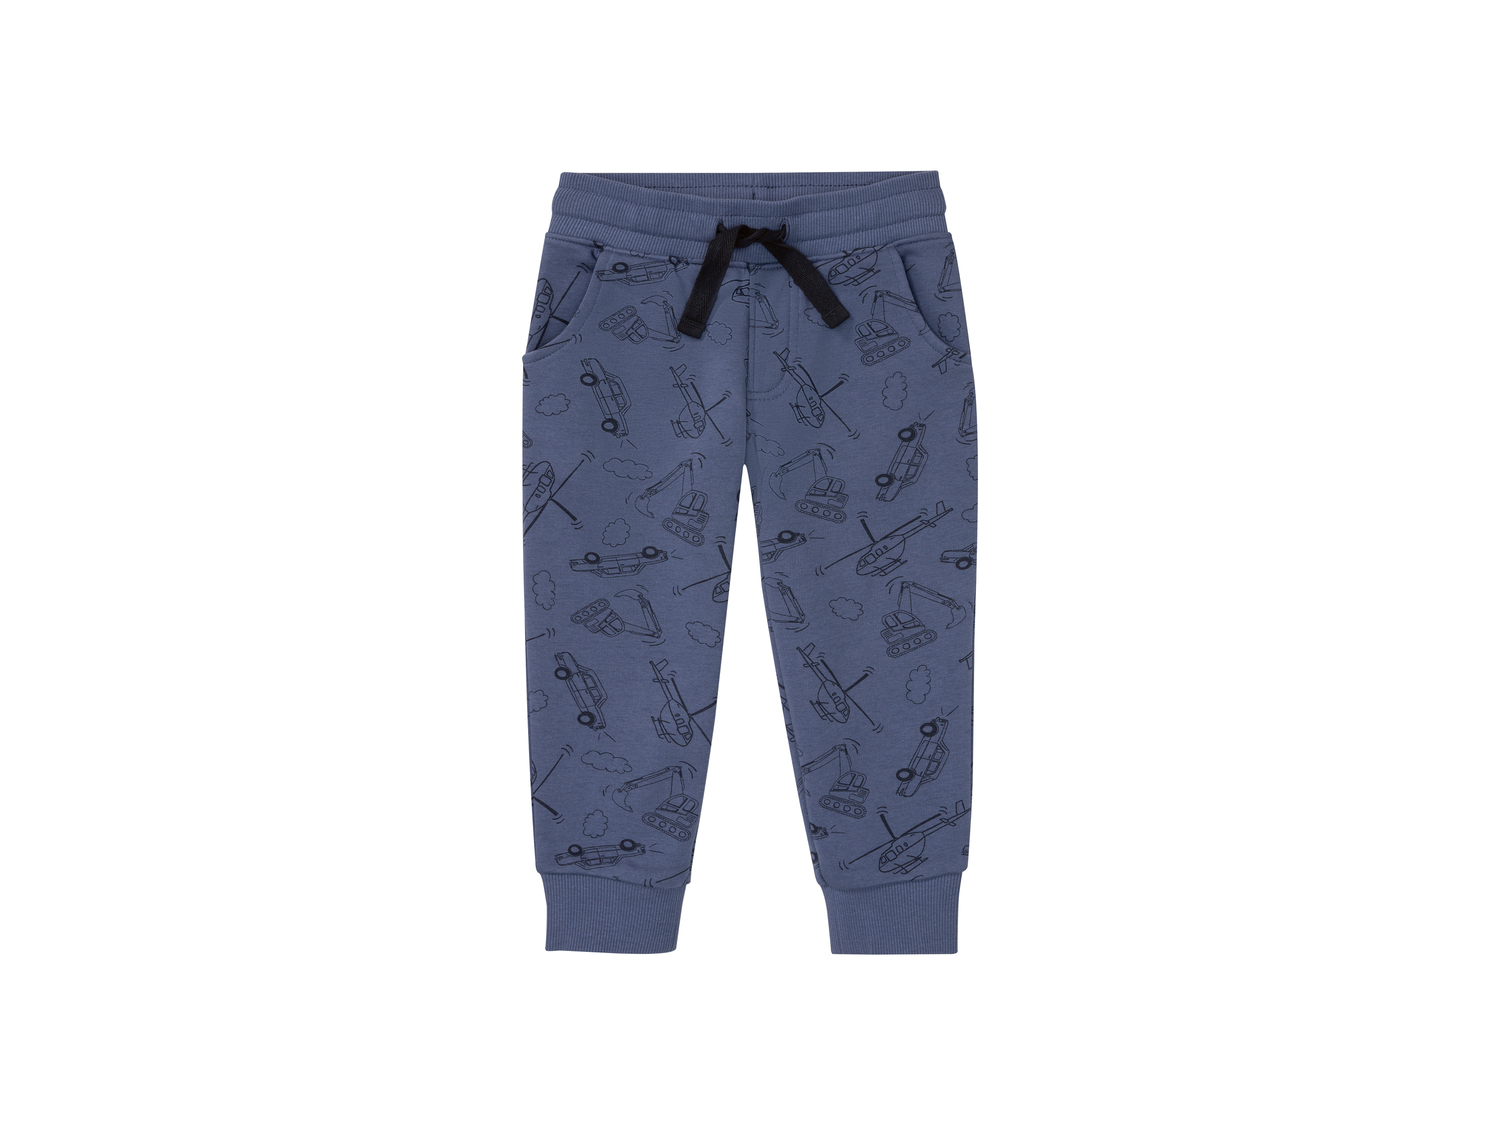 Pantaloni sportivi da bambino Lupilu-new, prezzo 4.99 &#8364; 
Misure: 1-6 anni
Taglie ...